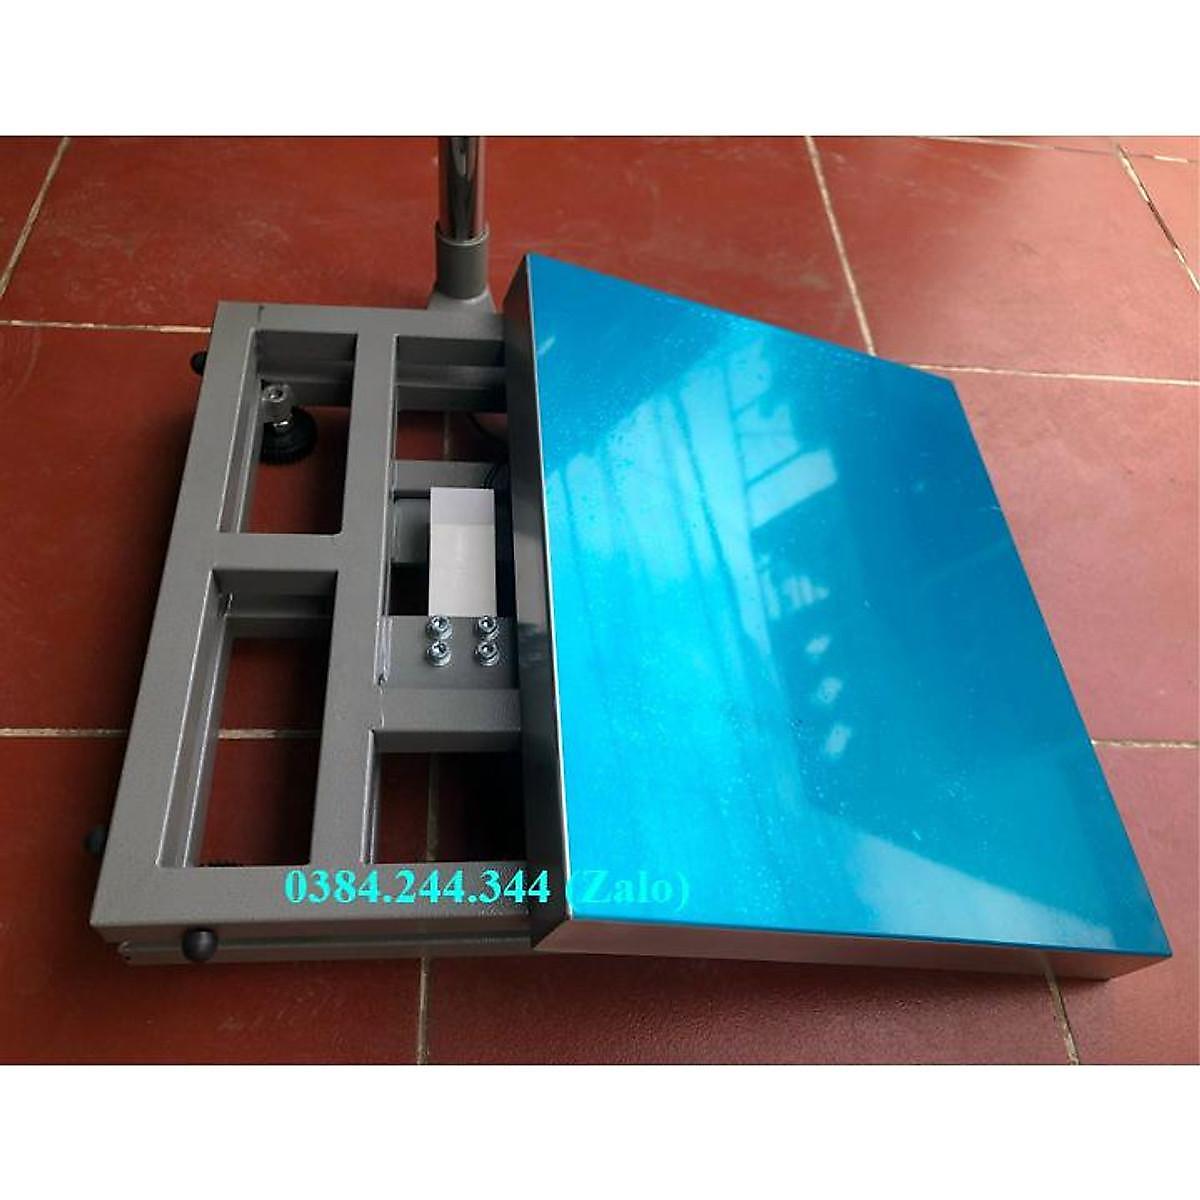 Cân bàn điện tử thông dụng Yaohua A12E, Mức cân 100kg, độ chia 0.02kg, Bàn cân kích thước 40x50cm (rộng x sâu)